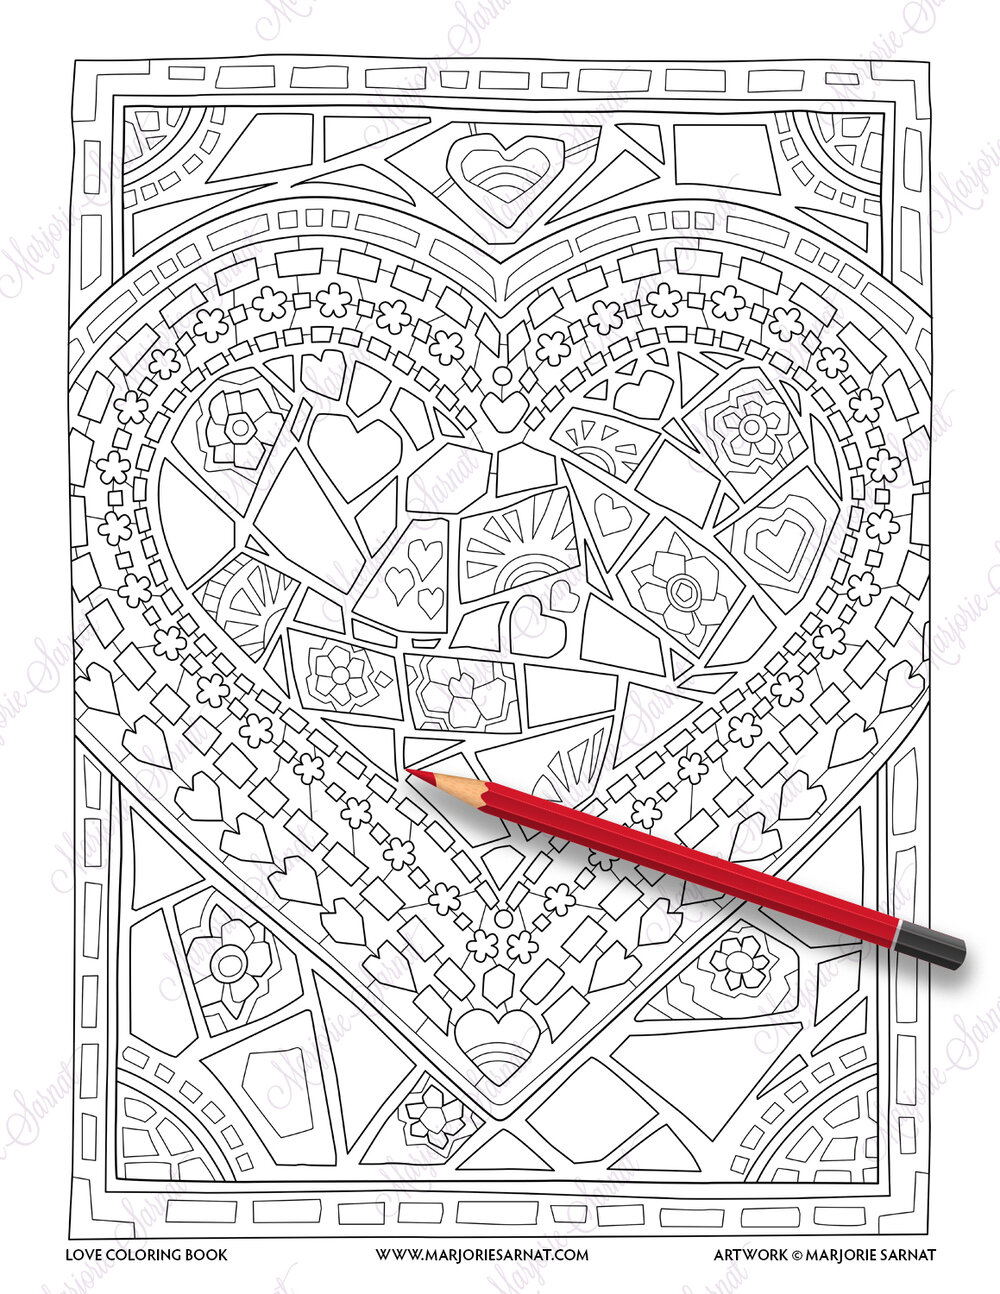 Love coloring book â marjorie sarnat design illustration